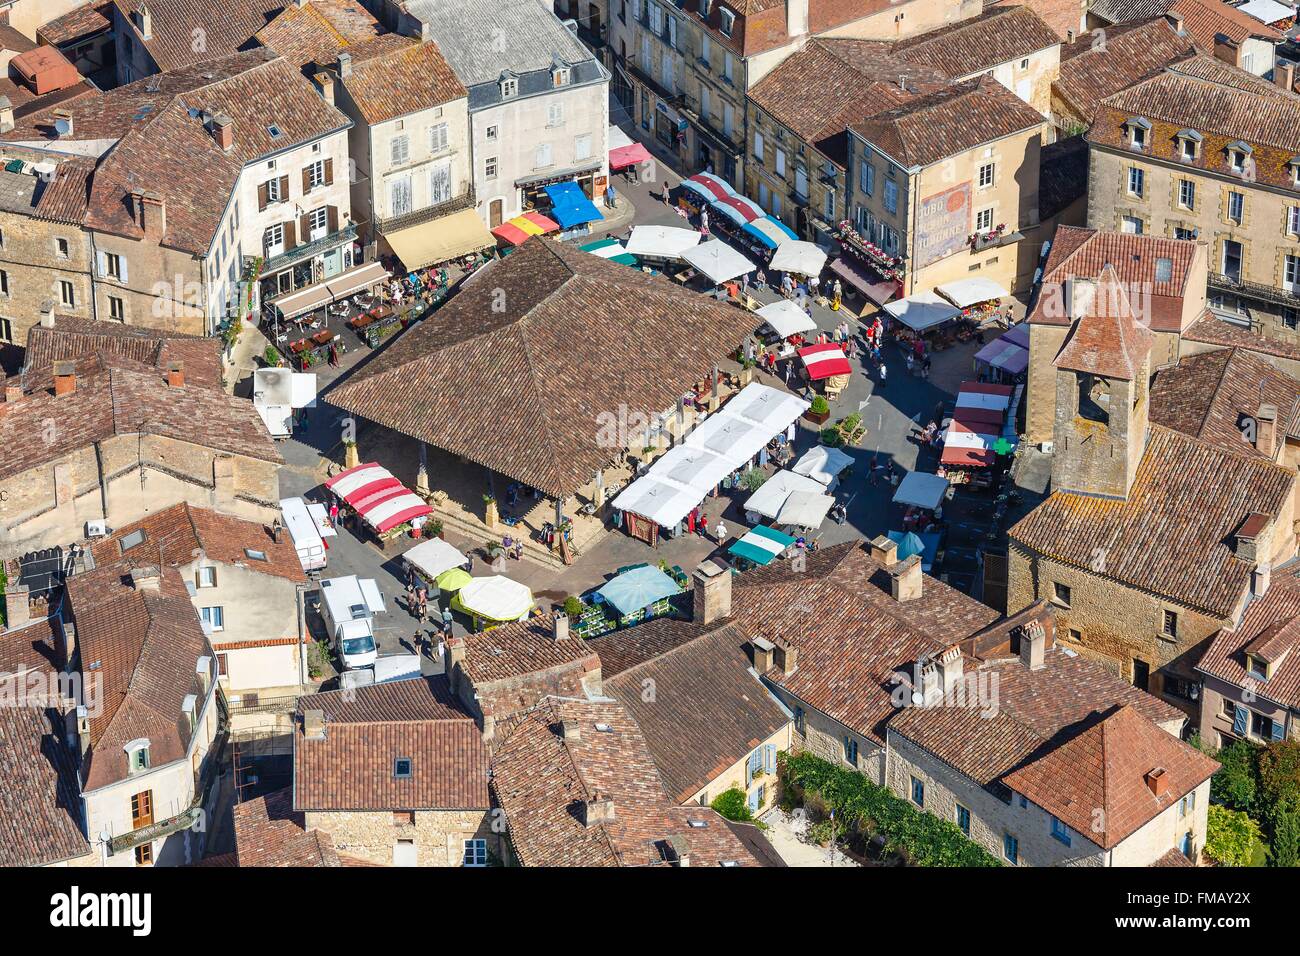 France, Dordogne, Belves, labelled Les Plus Beaux Villages de France (The Most Beautiful Villages of France), the market Stock Photo